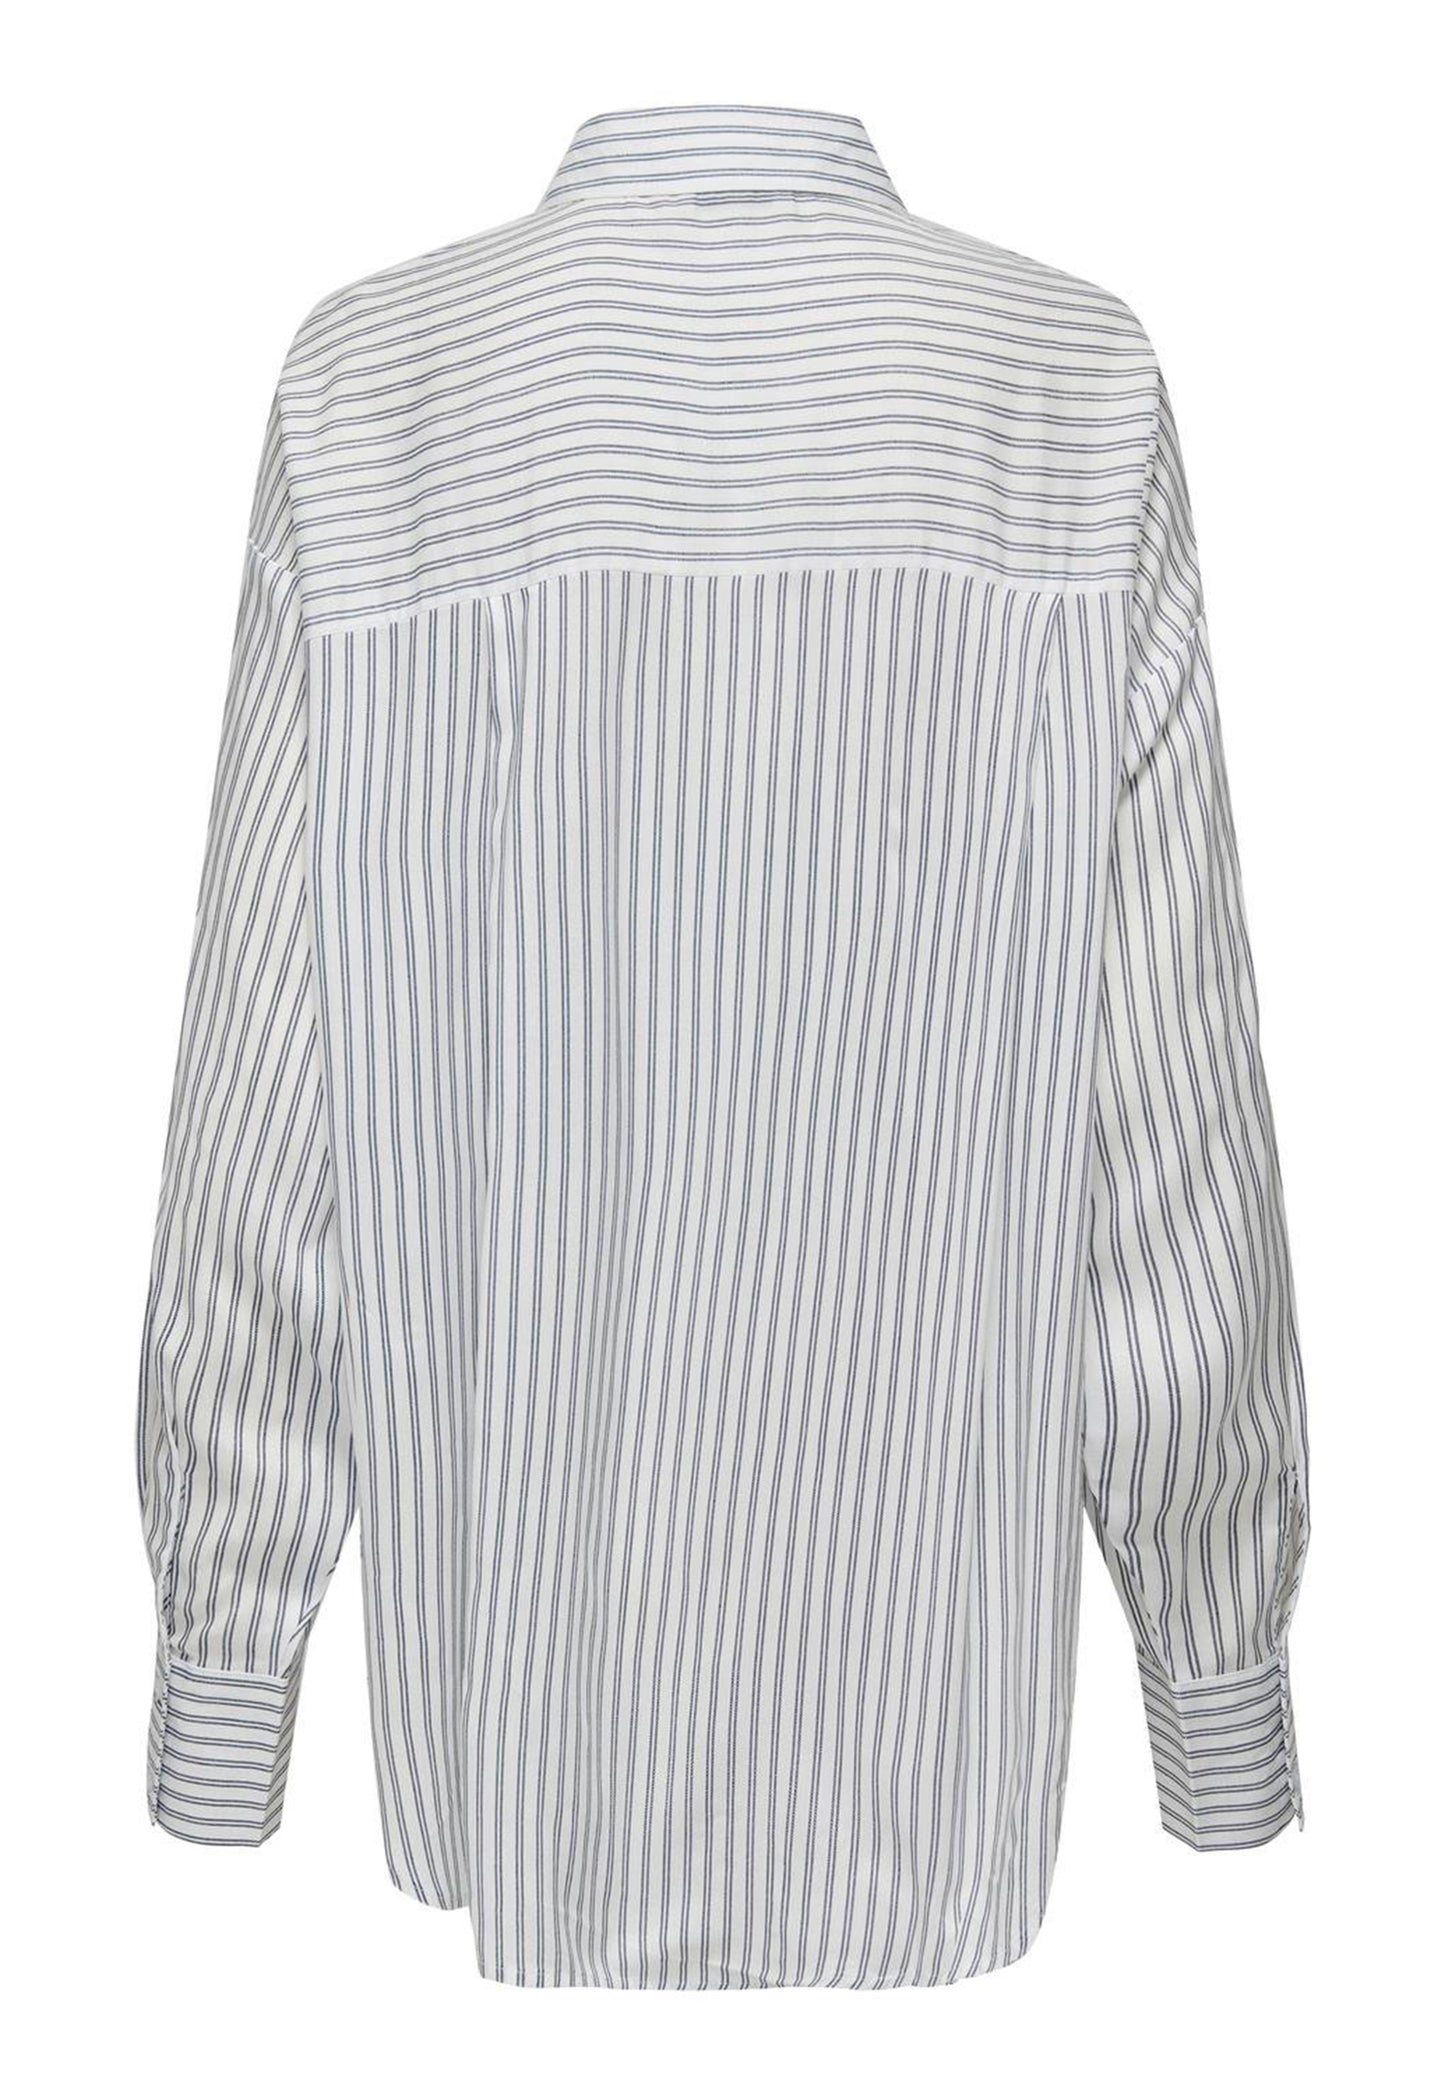 
                  
                    JDY Grace Stripe Longline långärmad bomullsskjorta med nedsänkt fåll i vitt och marinblått - One Nation-kläder
                  
                